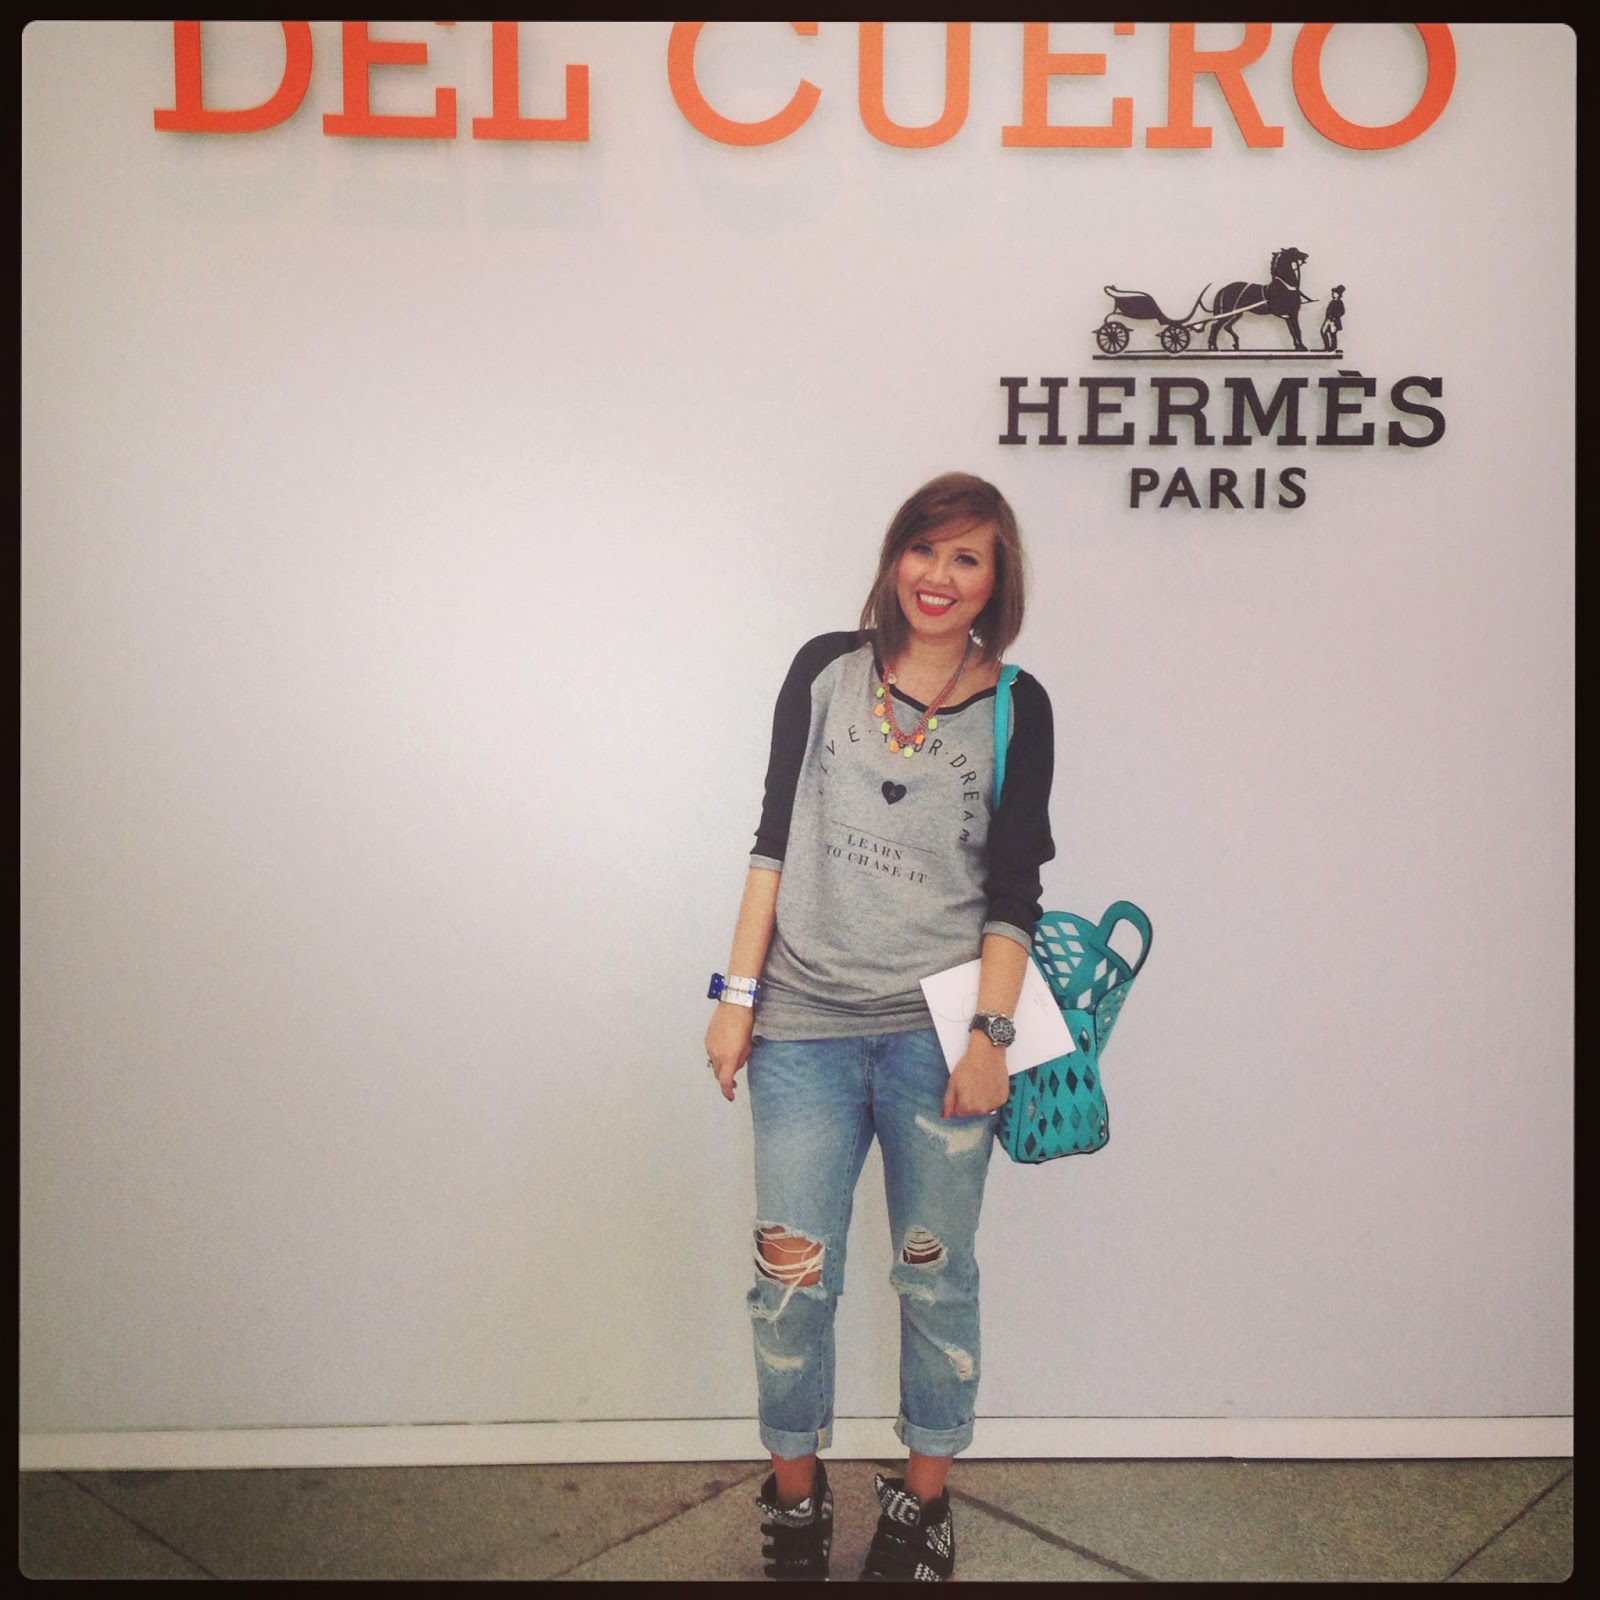 HERMES EXPERIENCE IN MADRID